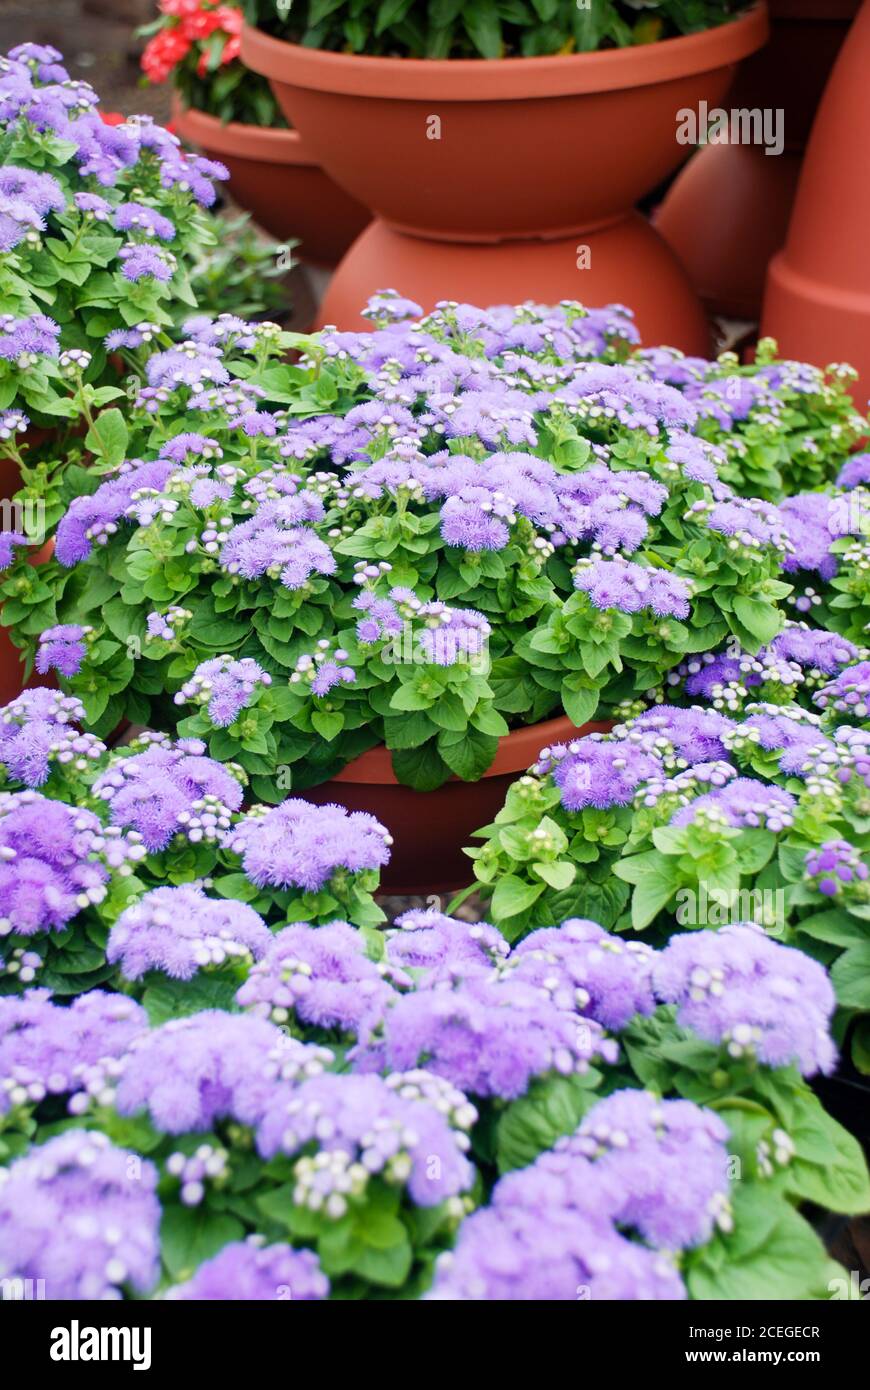 Ageratum, light purple ageratum, pot plants in the black tray Stock Photo